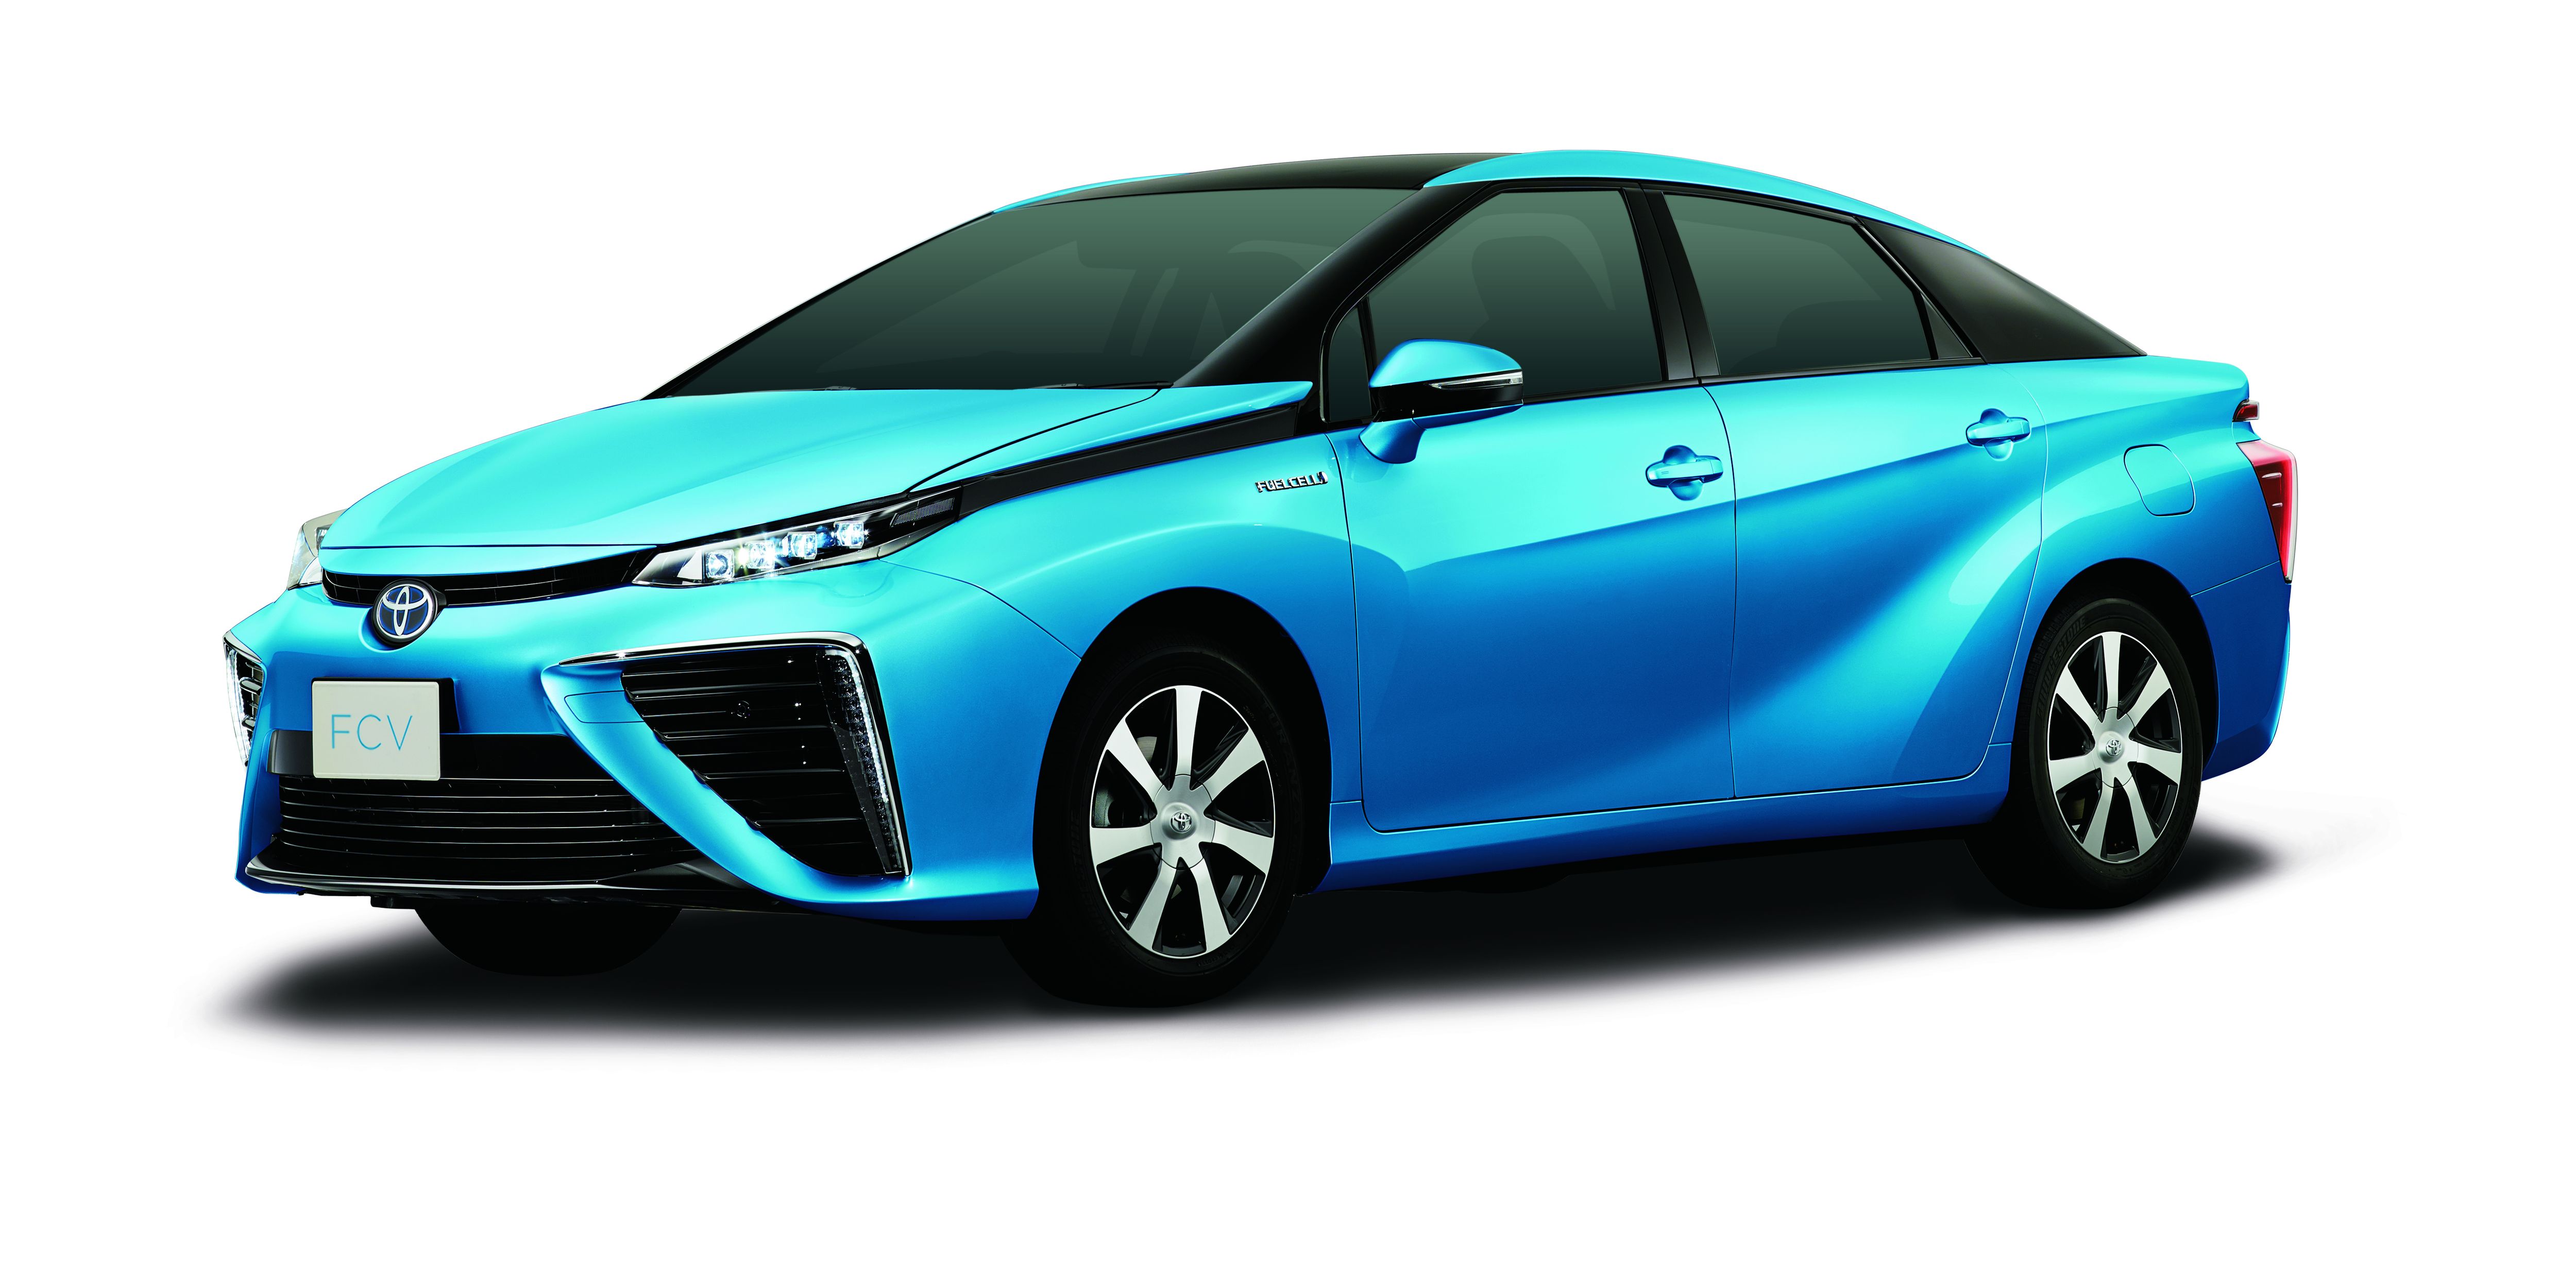 La Toyota FCV à moteur électrique embarque une pile à combustible alimentée par deux bonbonnes d'hydrogène sous pression (700 bars) et par l'oxygène atmosphérique (d'où les deux énormes entrées d'air). L'autonomie serait de 500 km. © Toyota